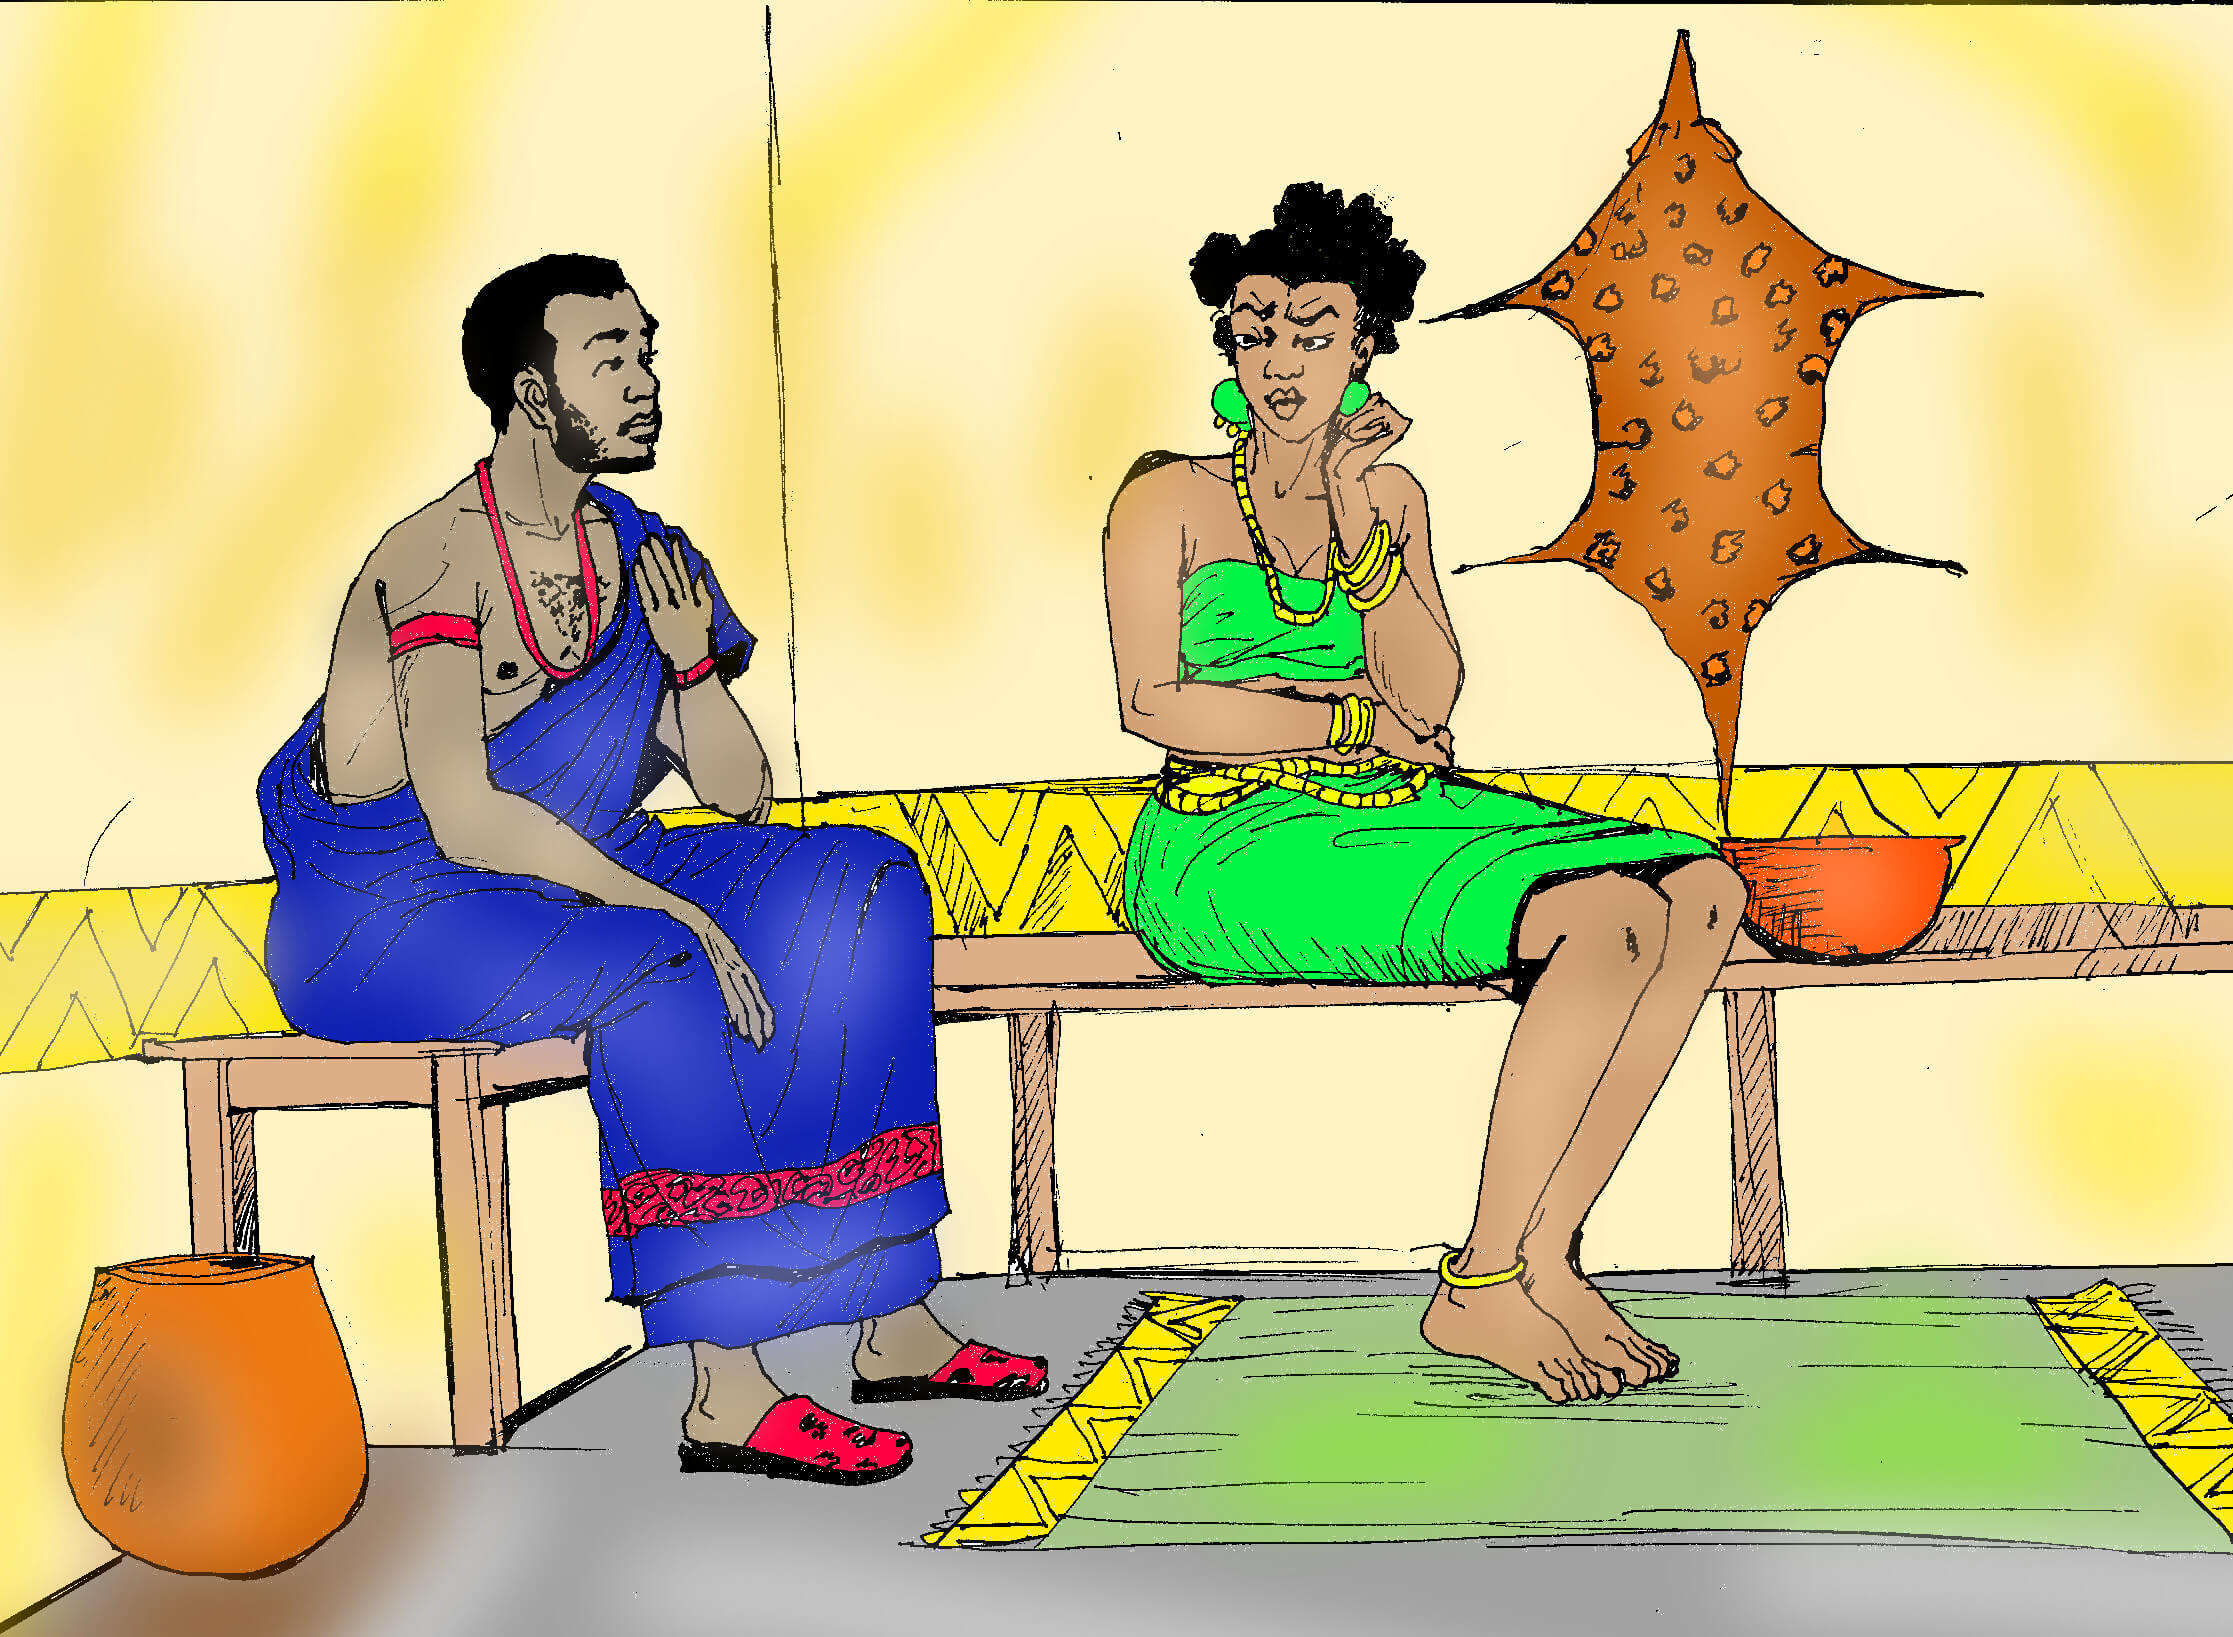 Igba alụkwaghịm: The act of divorce in igbo culture